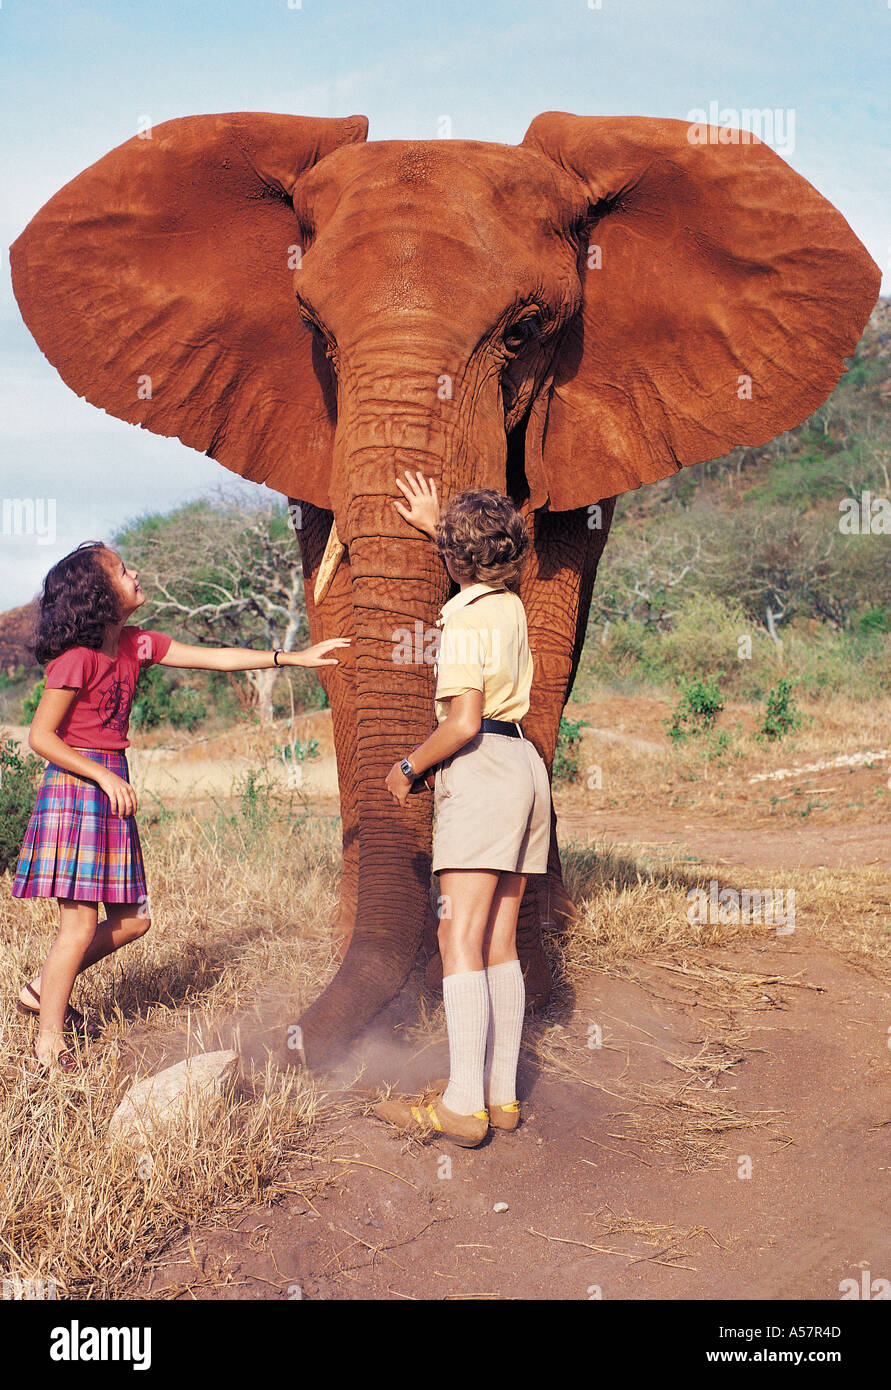 Two white children meeting orphaned elephant in Tsavo East National Park Kenya East Africa Stock Photo